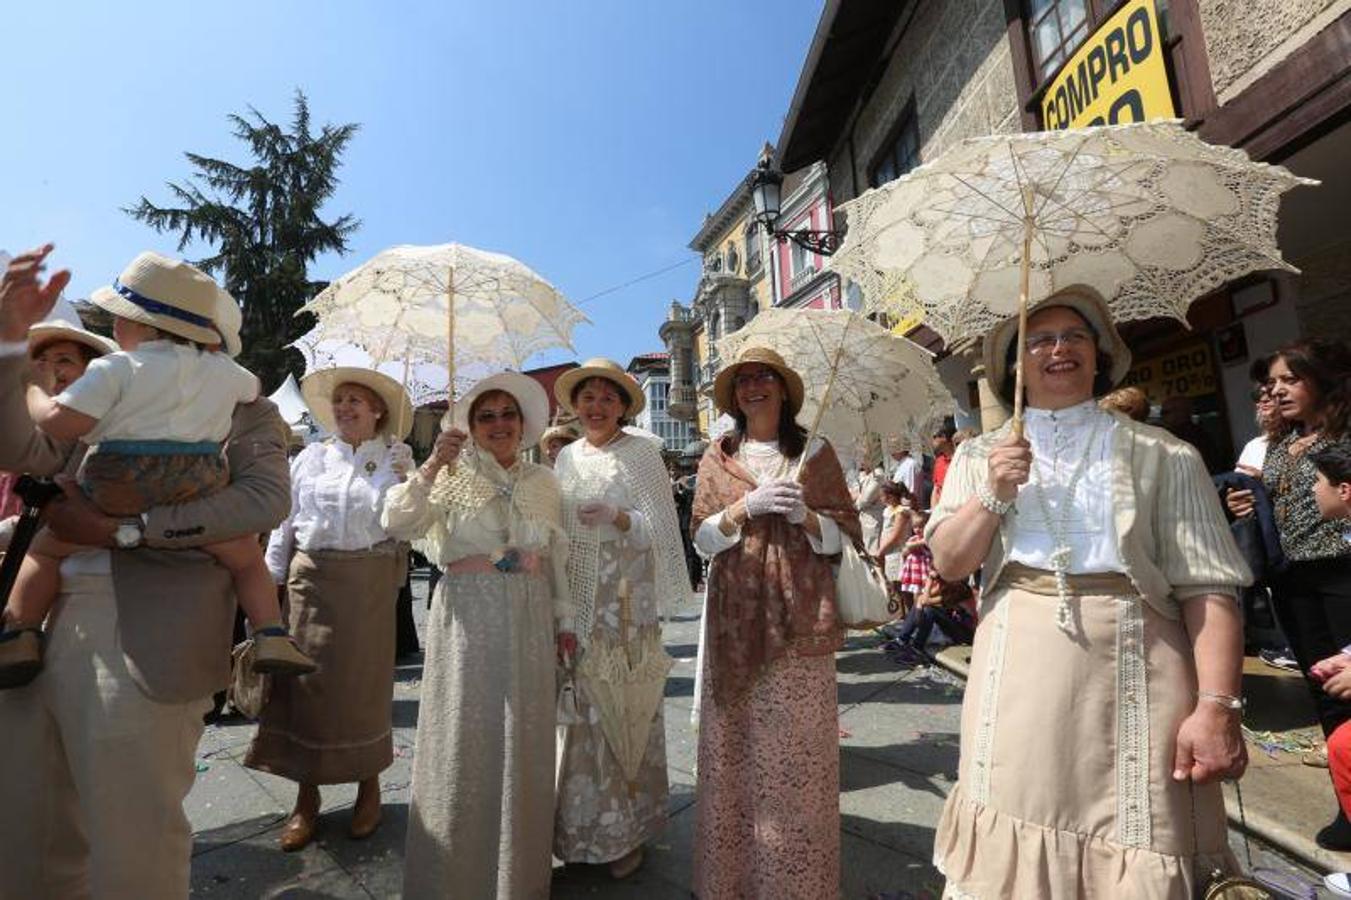 Las fiestas de El Bollo comenzaron este domingo con la lectura del pregón en la plaza de España y el primer desfile de carrozas por las calles del centro de la ciudad, abarrotadas de público en una jornada calurosa